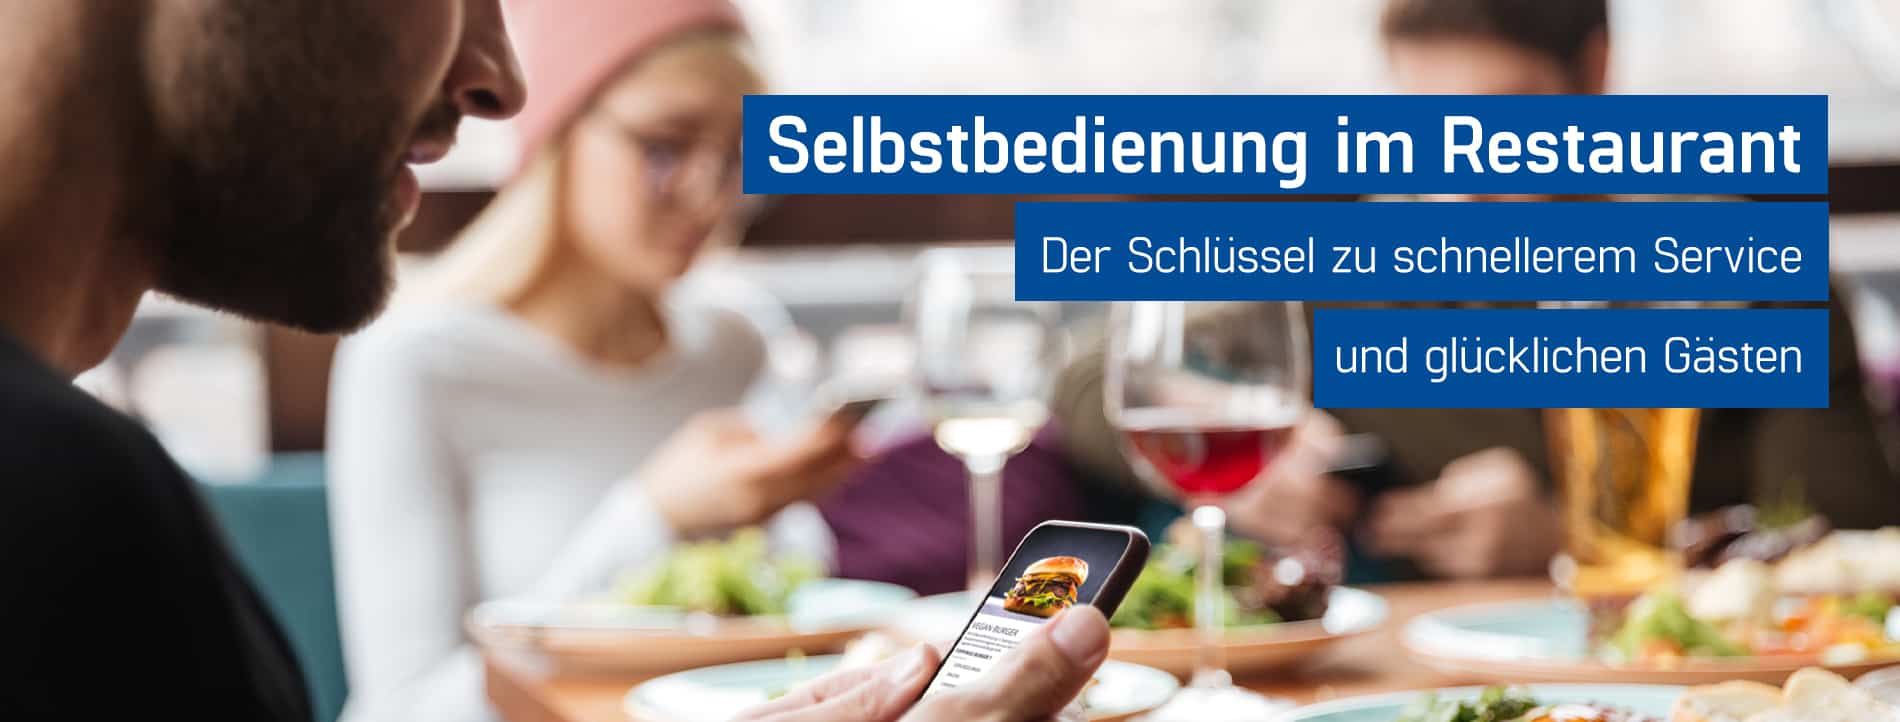 Restaurantgast bestellt Speisen und Getränke mit der ORDA App von GastroSoft direkt zum Tisch, Selbstbedienung Gastronomie